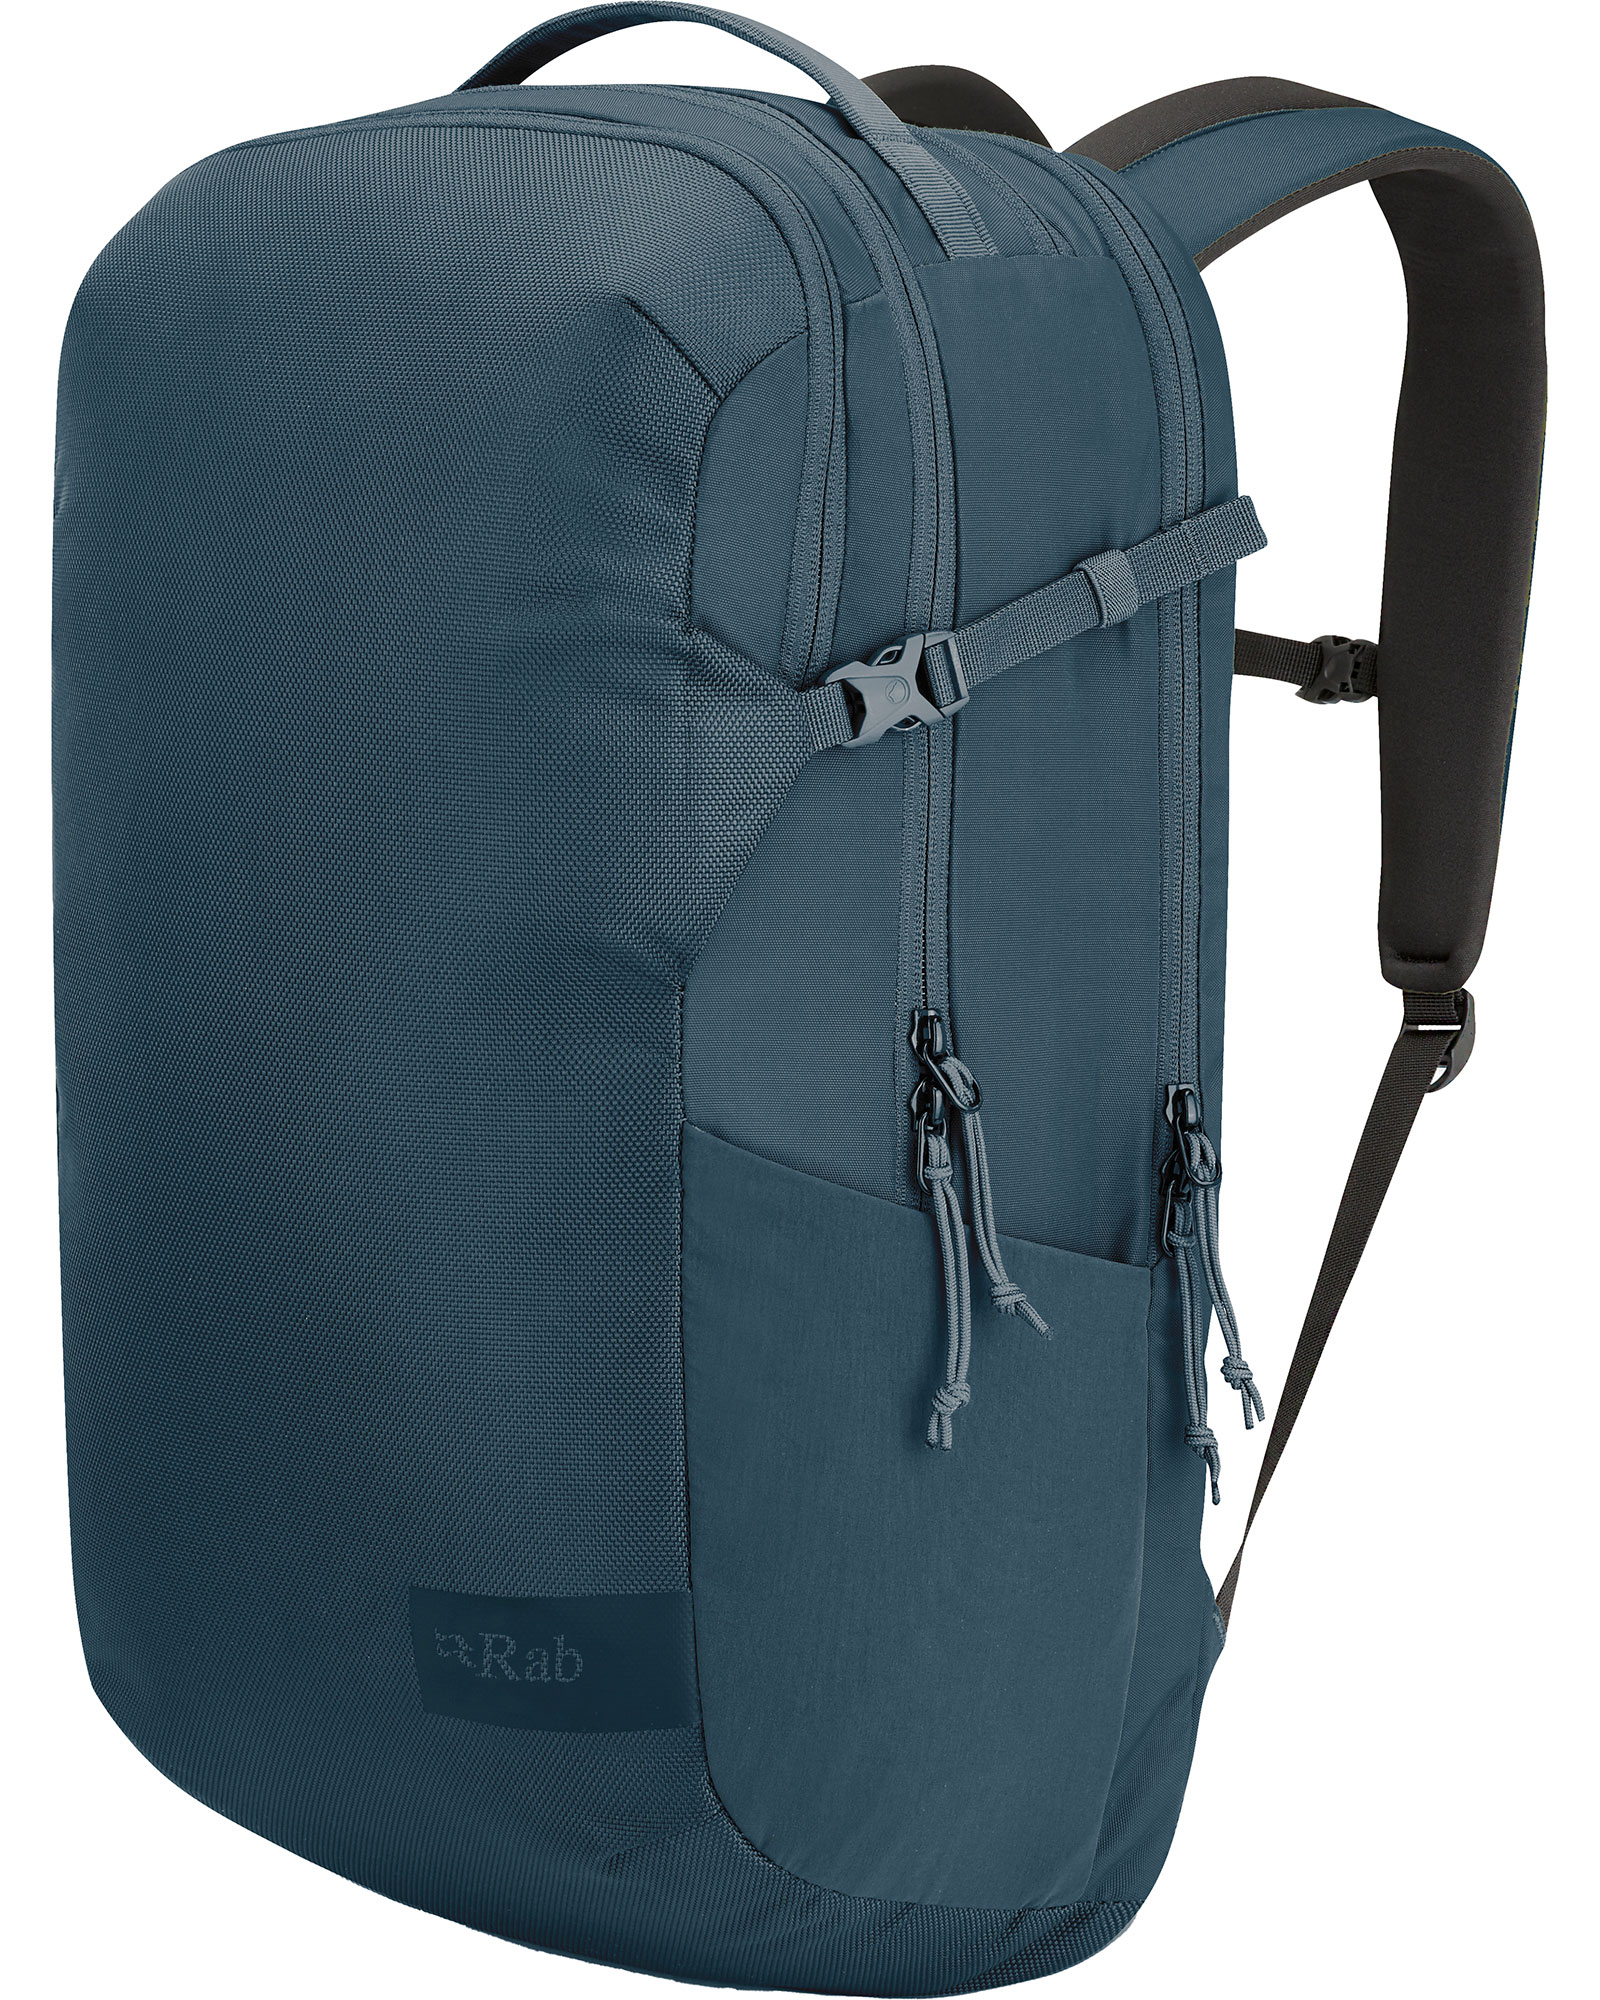 Rab Depot 28 Backpack - Orion Blue